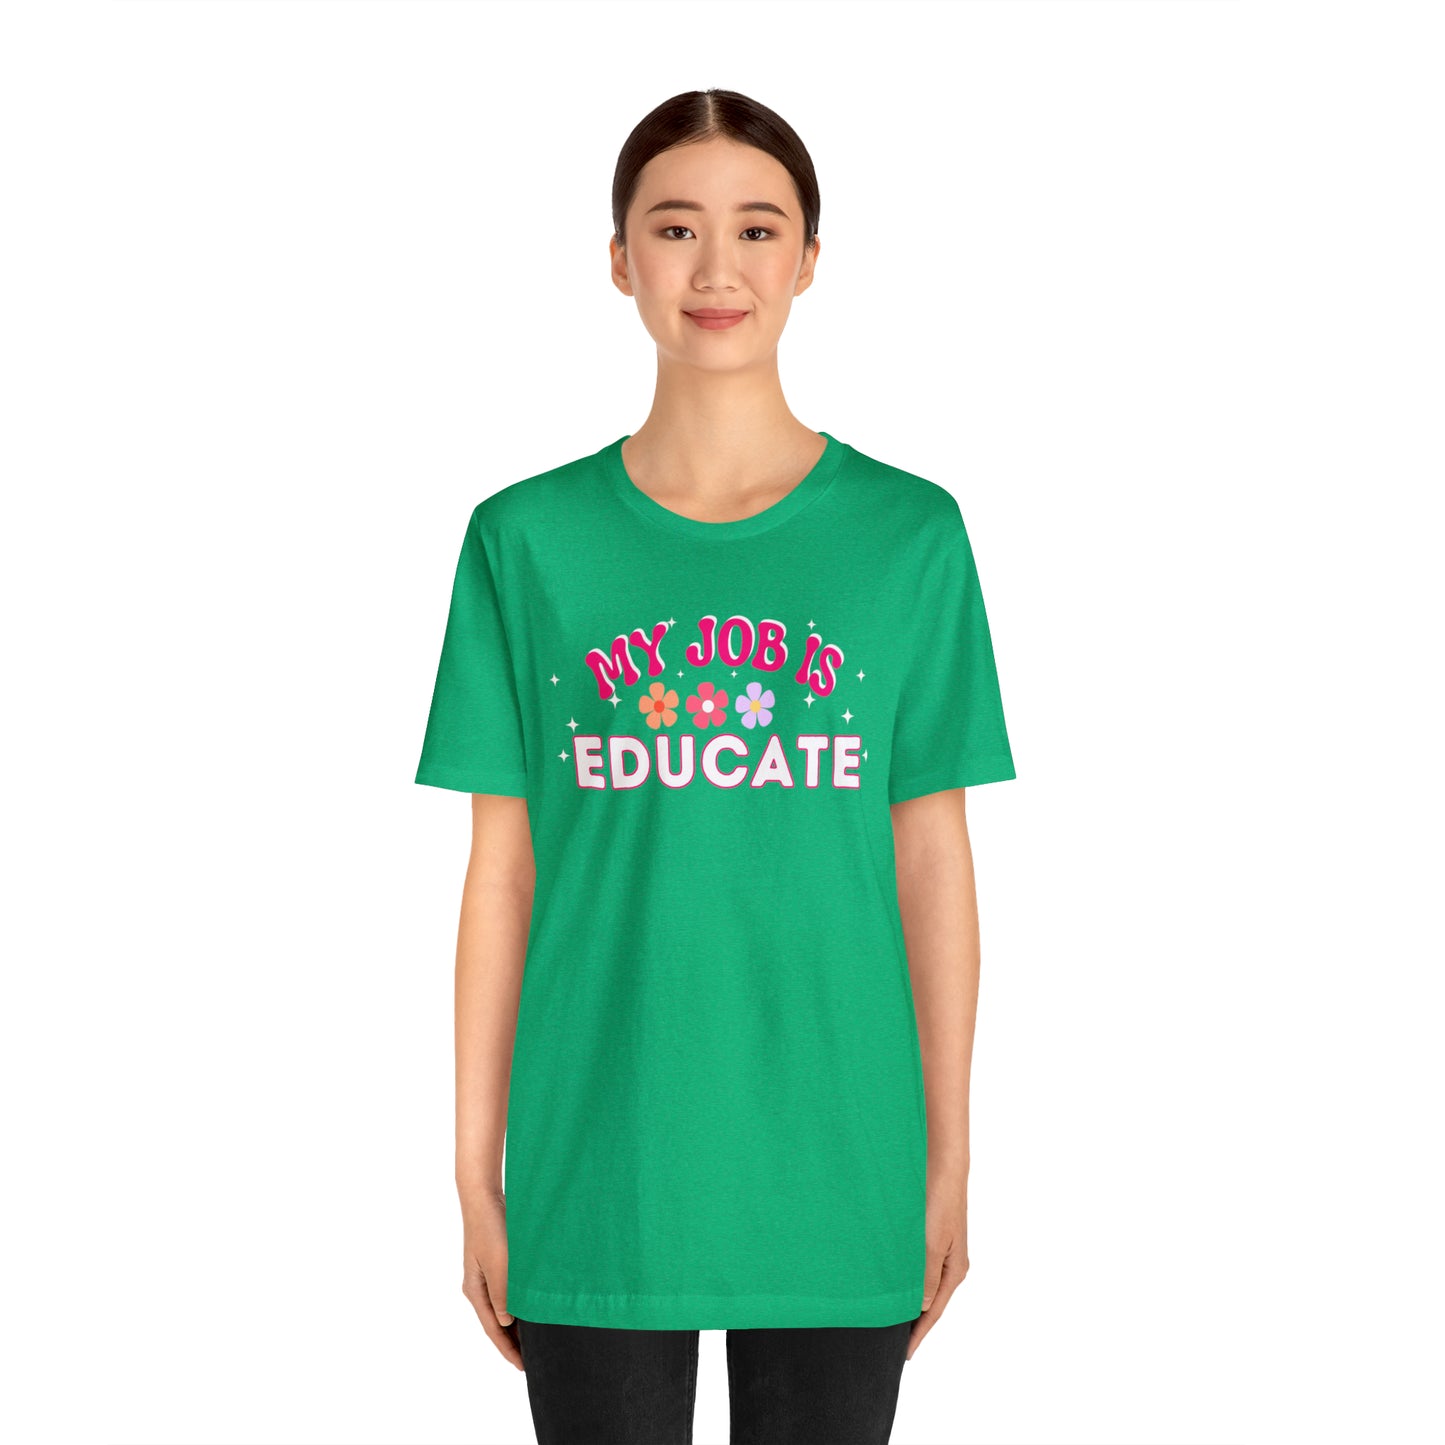 My Job is Educate Shirt Teacher Shirt, Mentor Collage Professor Shirt, Elementary School Teacher Gift Shirt High School Teacher Shirt Pre-K Preschool Kindergarten